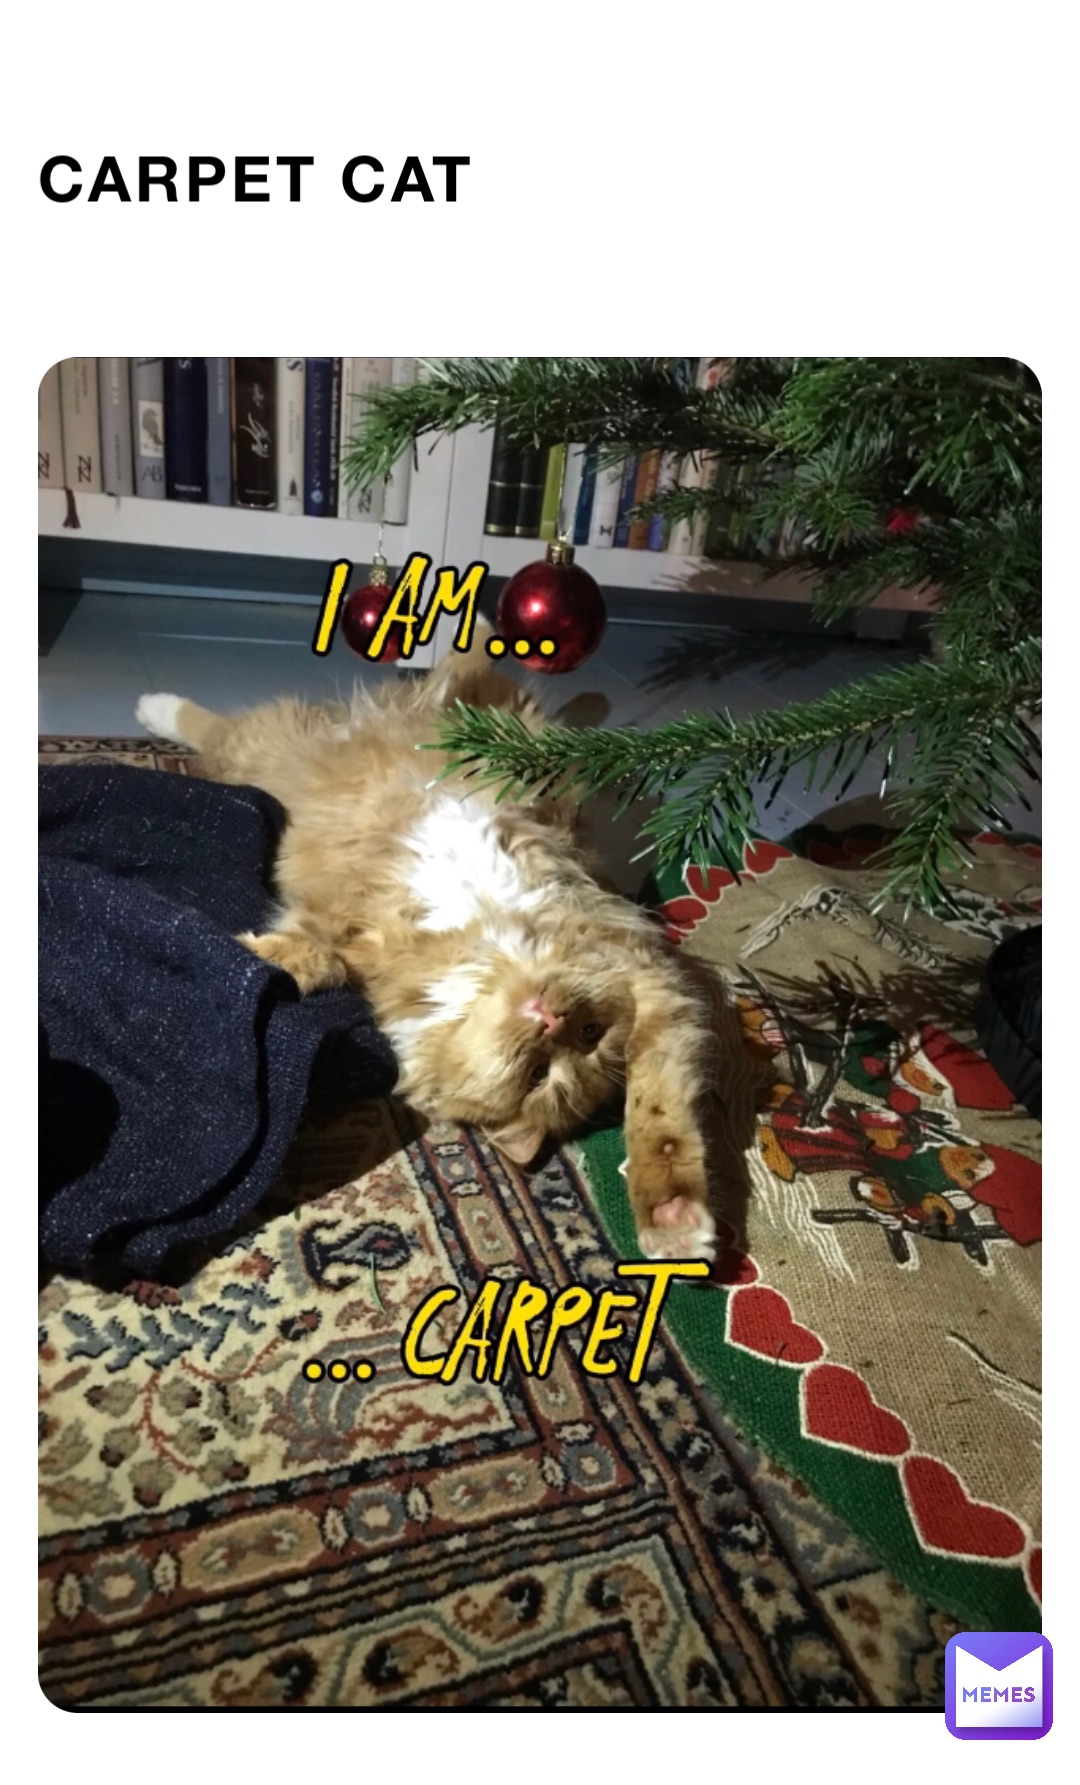 Carpet cat